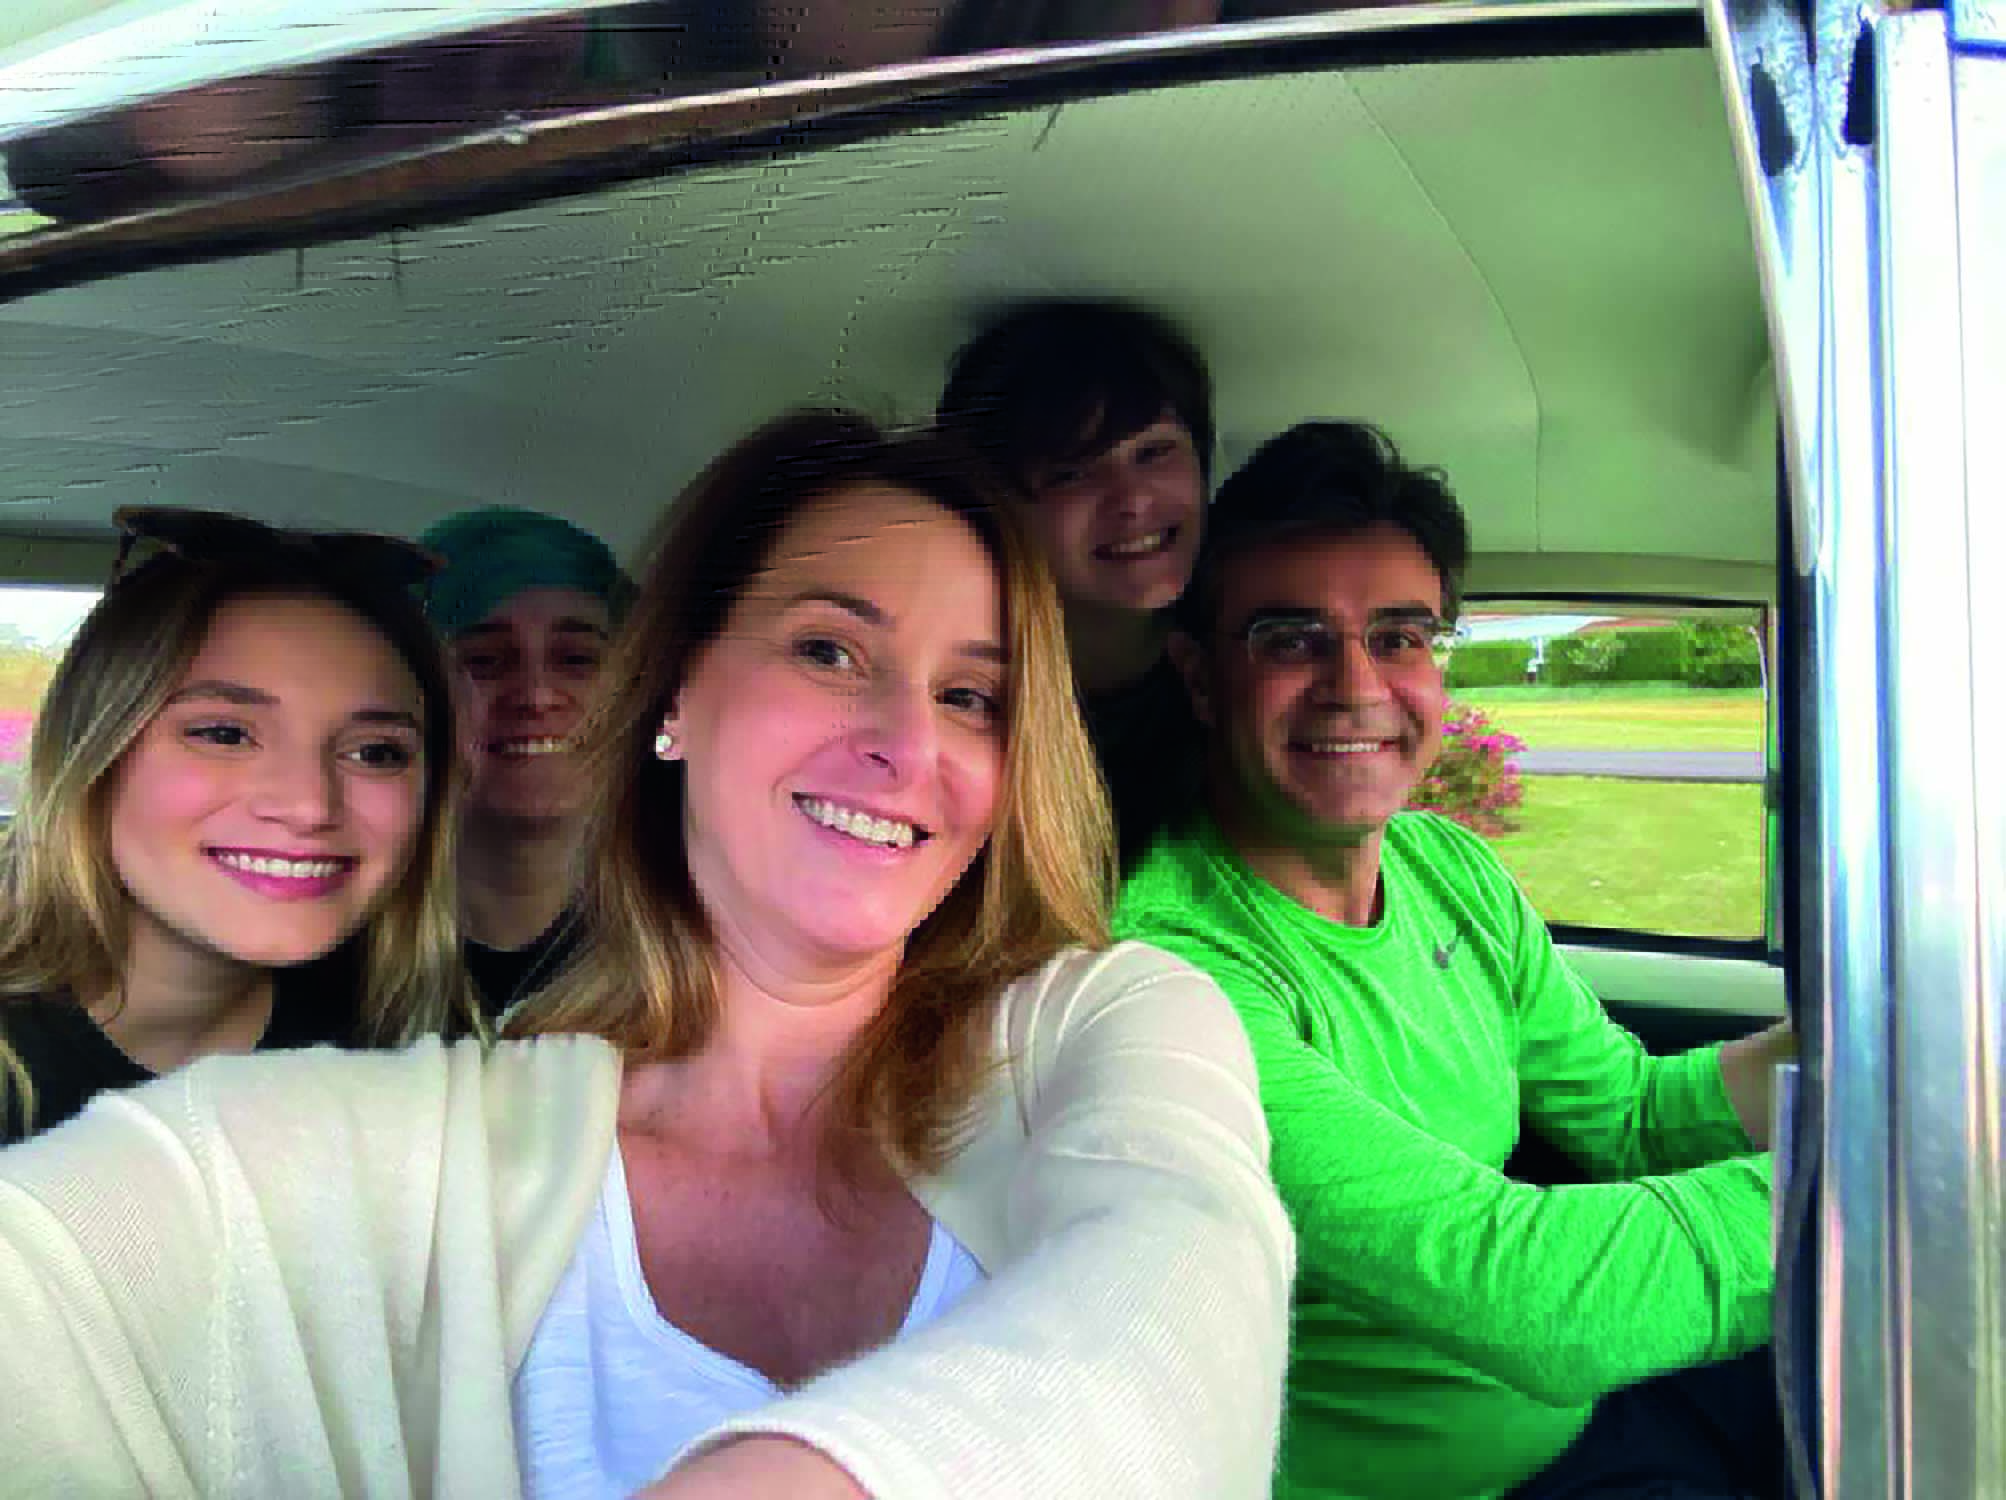 Imagem mostra família dentro de carro, todos sorrindo. Um homem de roupa verde está dirigindo, e uma mulher está tirando a foto. Os três filhos estão no banco de trás